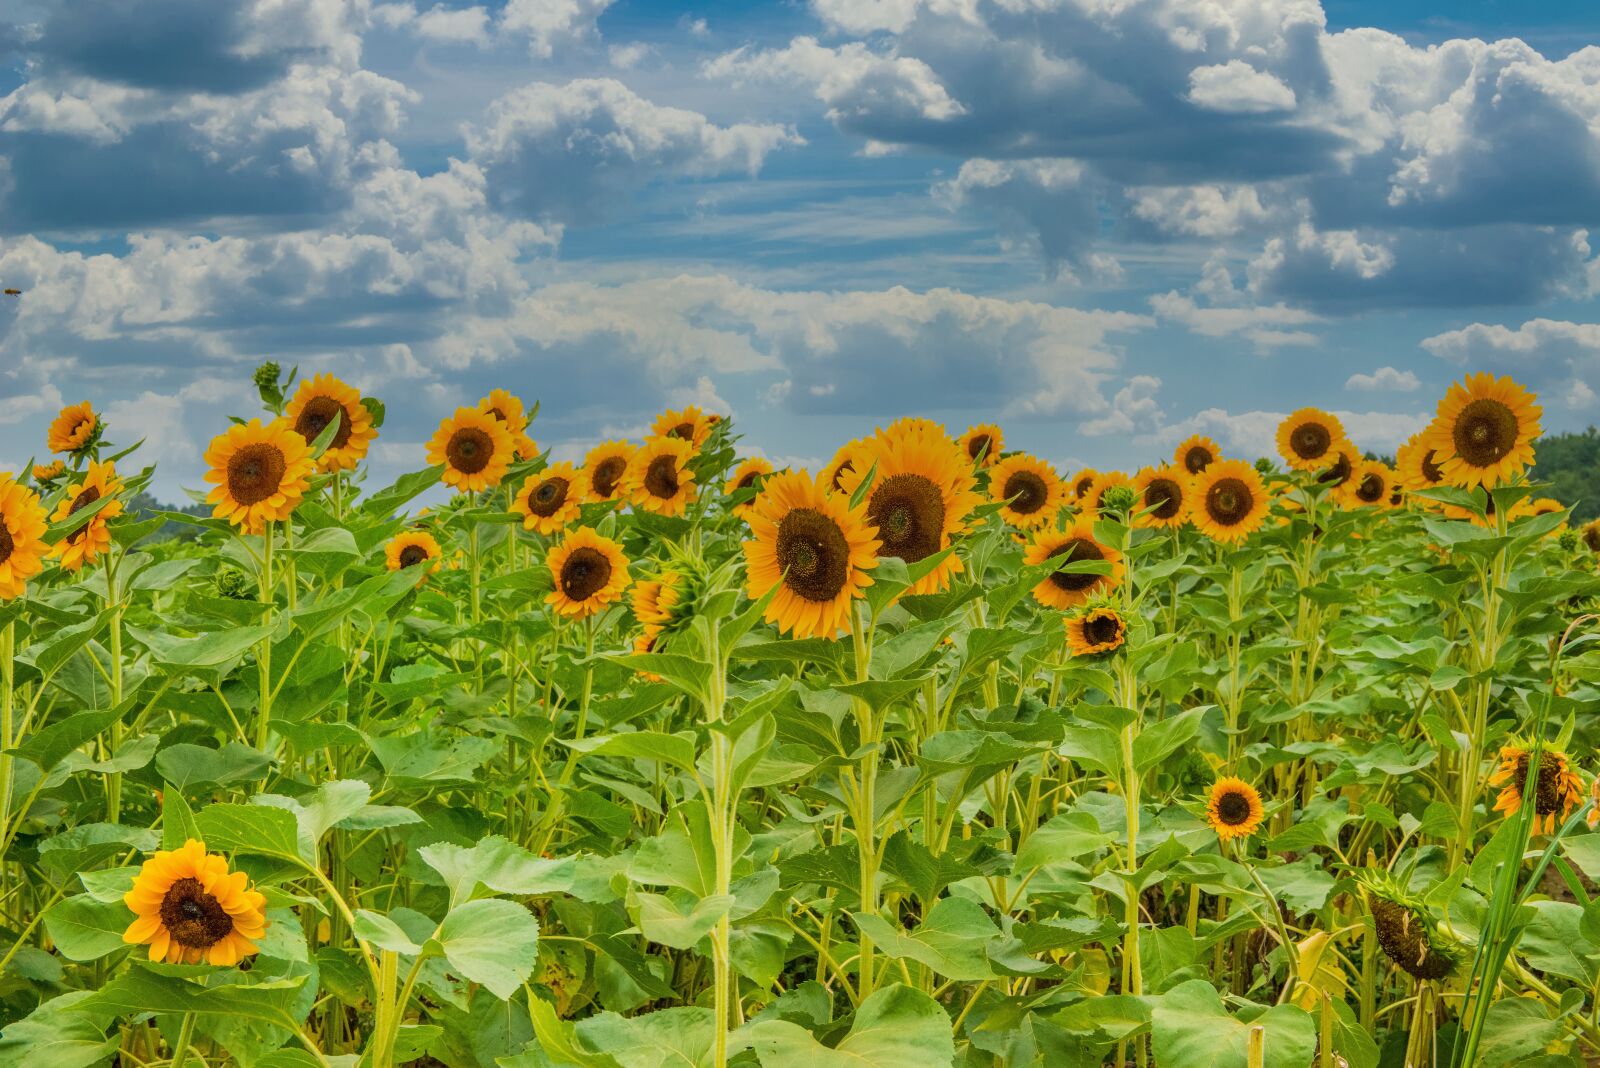 Nikon D800 sample photo. Sunflowers, farm, mohan photography